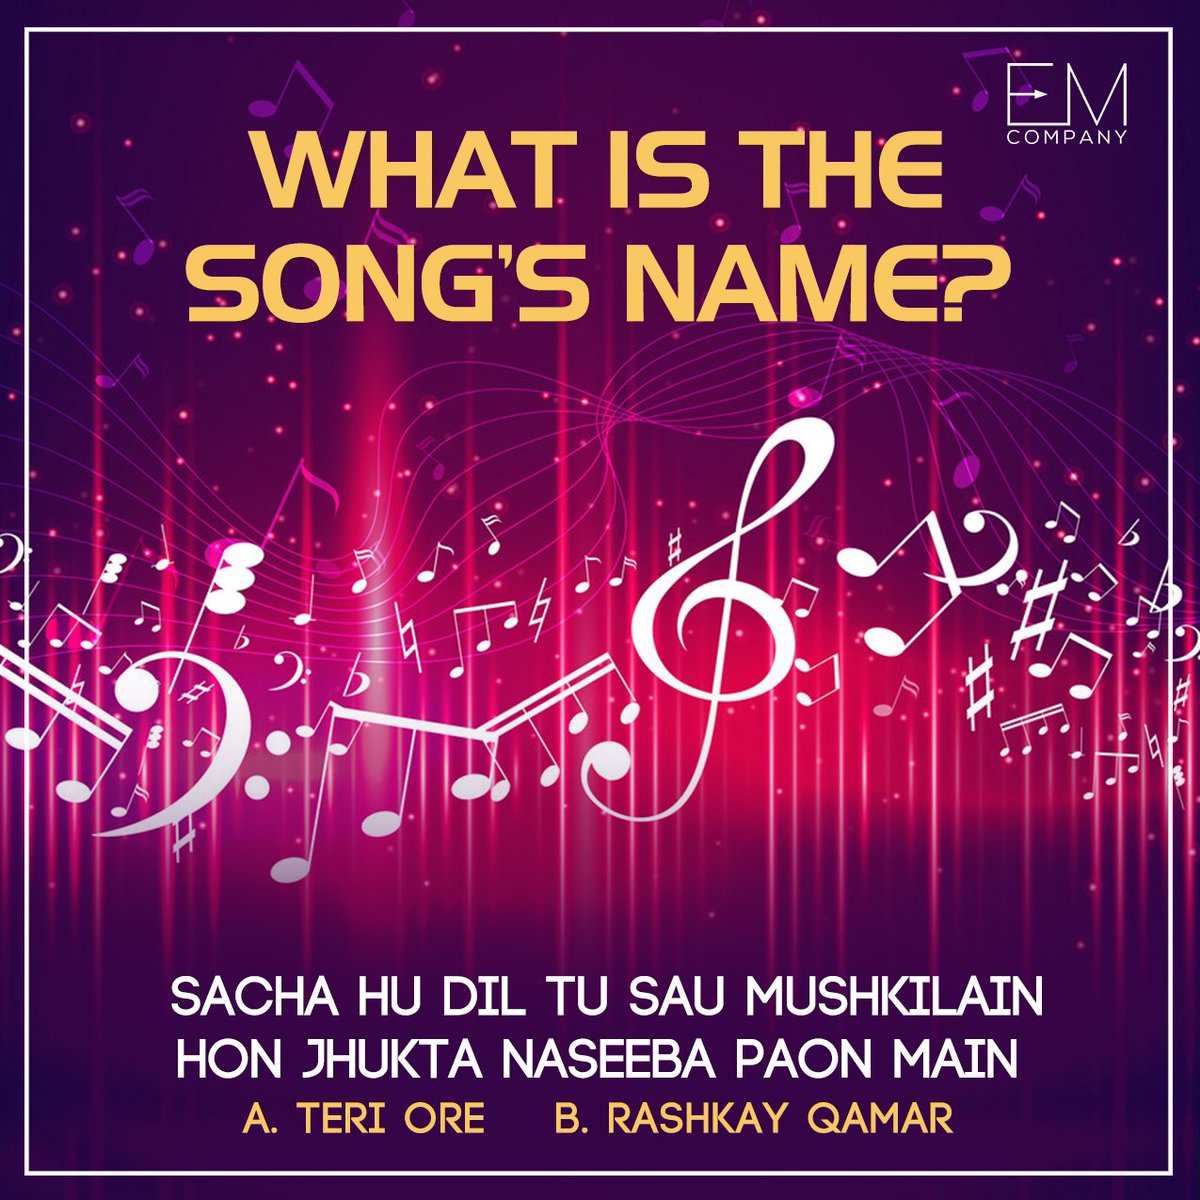 “Sacha hu dil tu sau mushkilain hon jhukta naseeba paon
main “
Do you know the name of this song?
#Rahatfatehalikhan #Teriore #rashkayqamar 
#music #pakistanimusic #RahatFatehaliKhanSongs